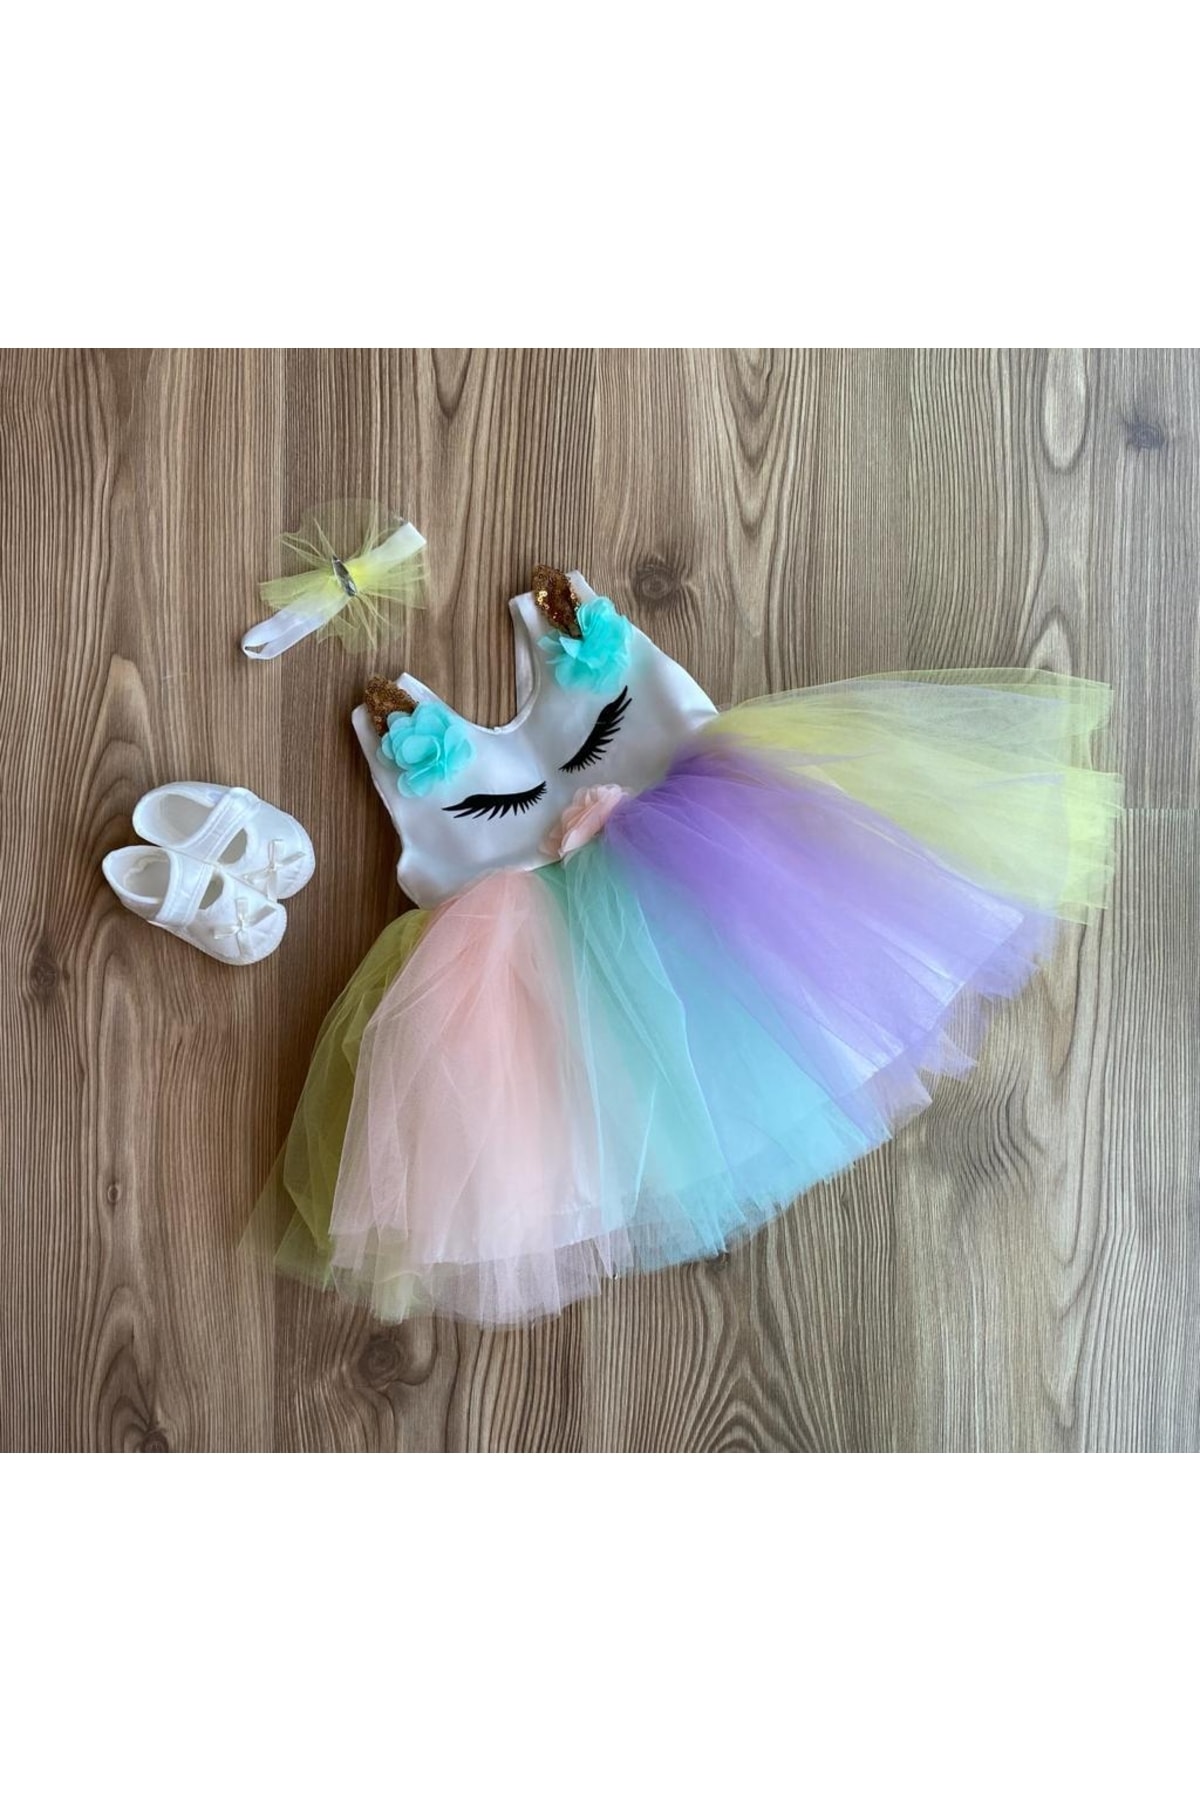 Cherub Petite Ponpon Baby 4 Lü Kız Bebek Mevlüt Elbisesi Renkli Tütü Elbise Unicorn